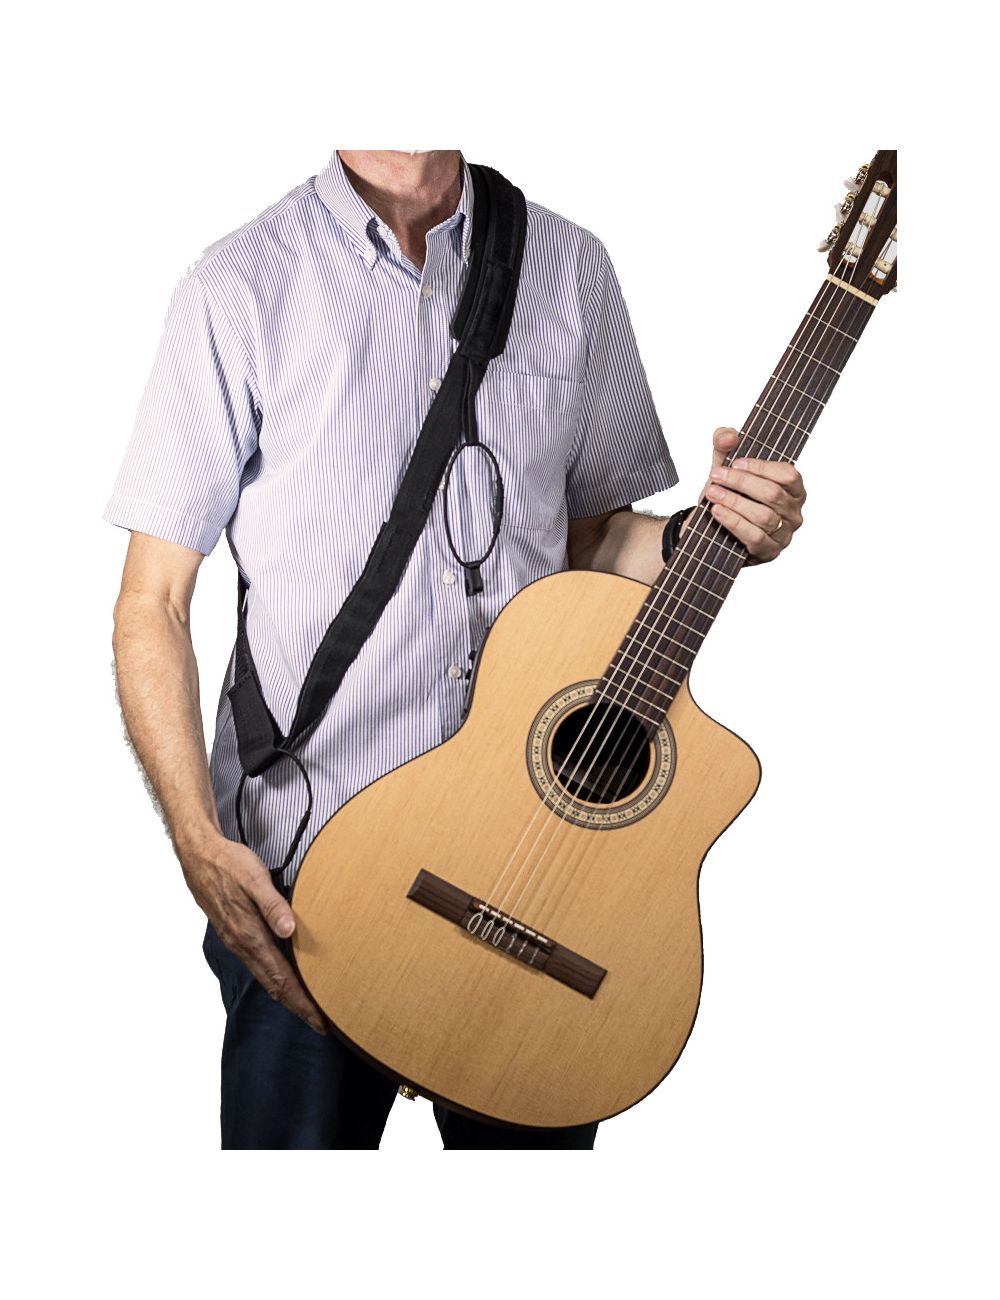 https://www.guitarfromspain.com/10111-large_default/luthier-strap-original-sangle-pour-guitare-classique-et-flamenco.jpg